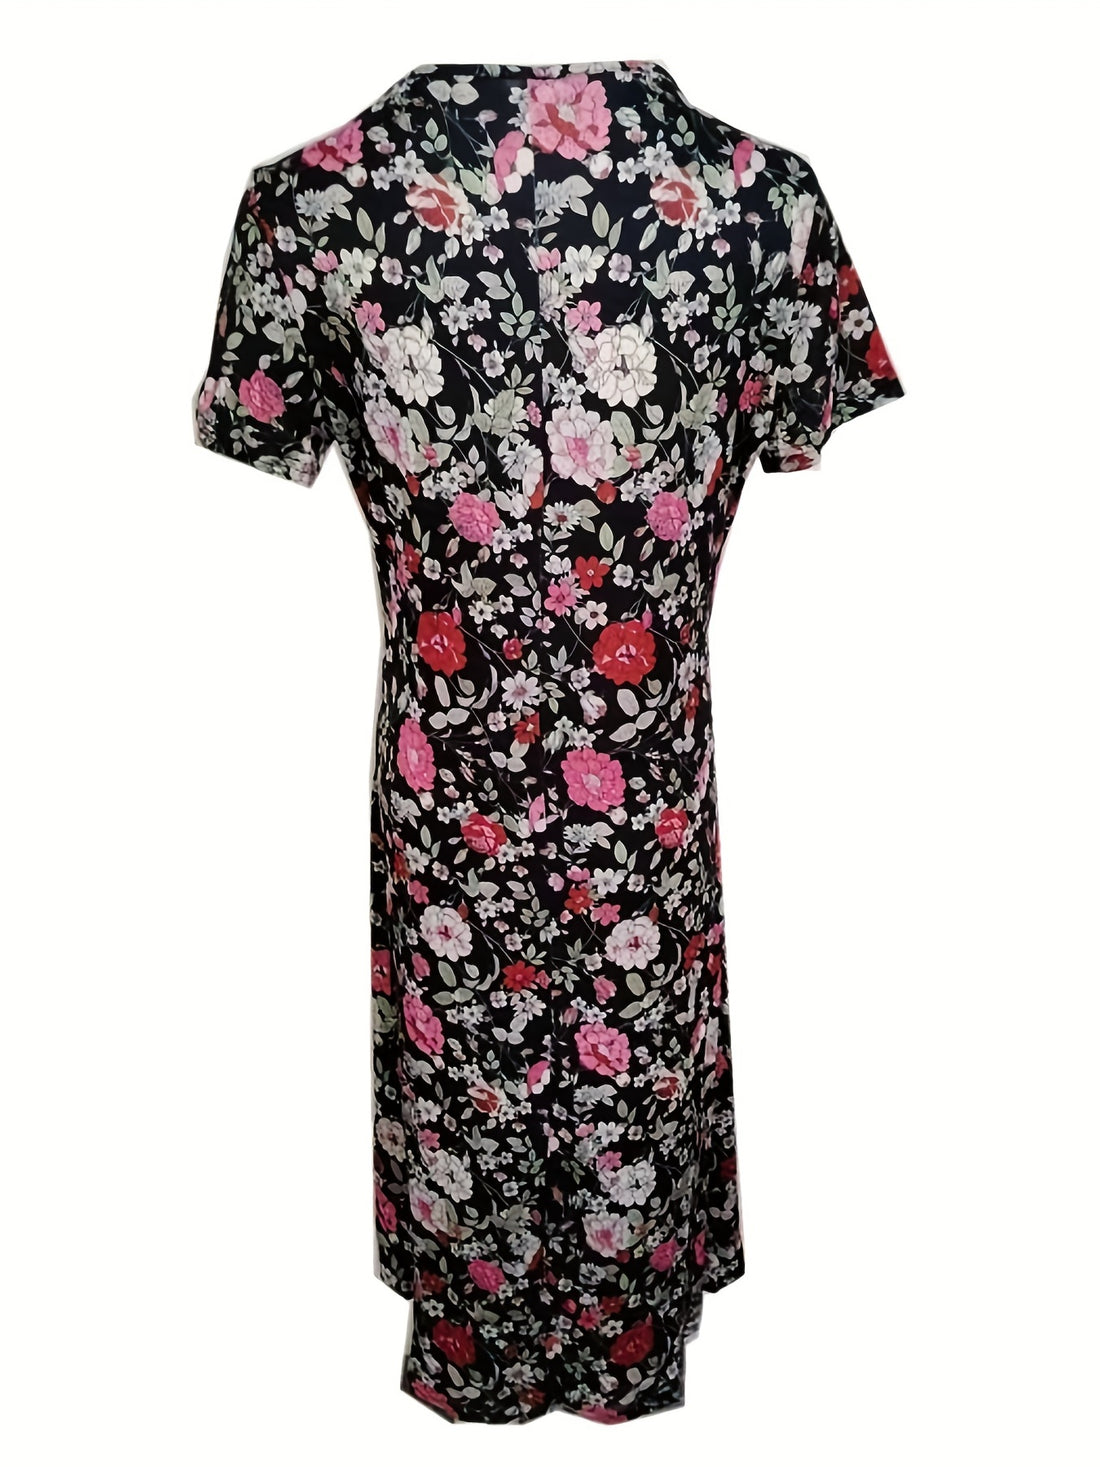 Floral Print Pleated Dress, Vintage Elegant V Neck Short Sleeve Dress